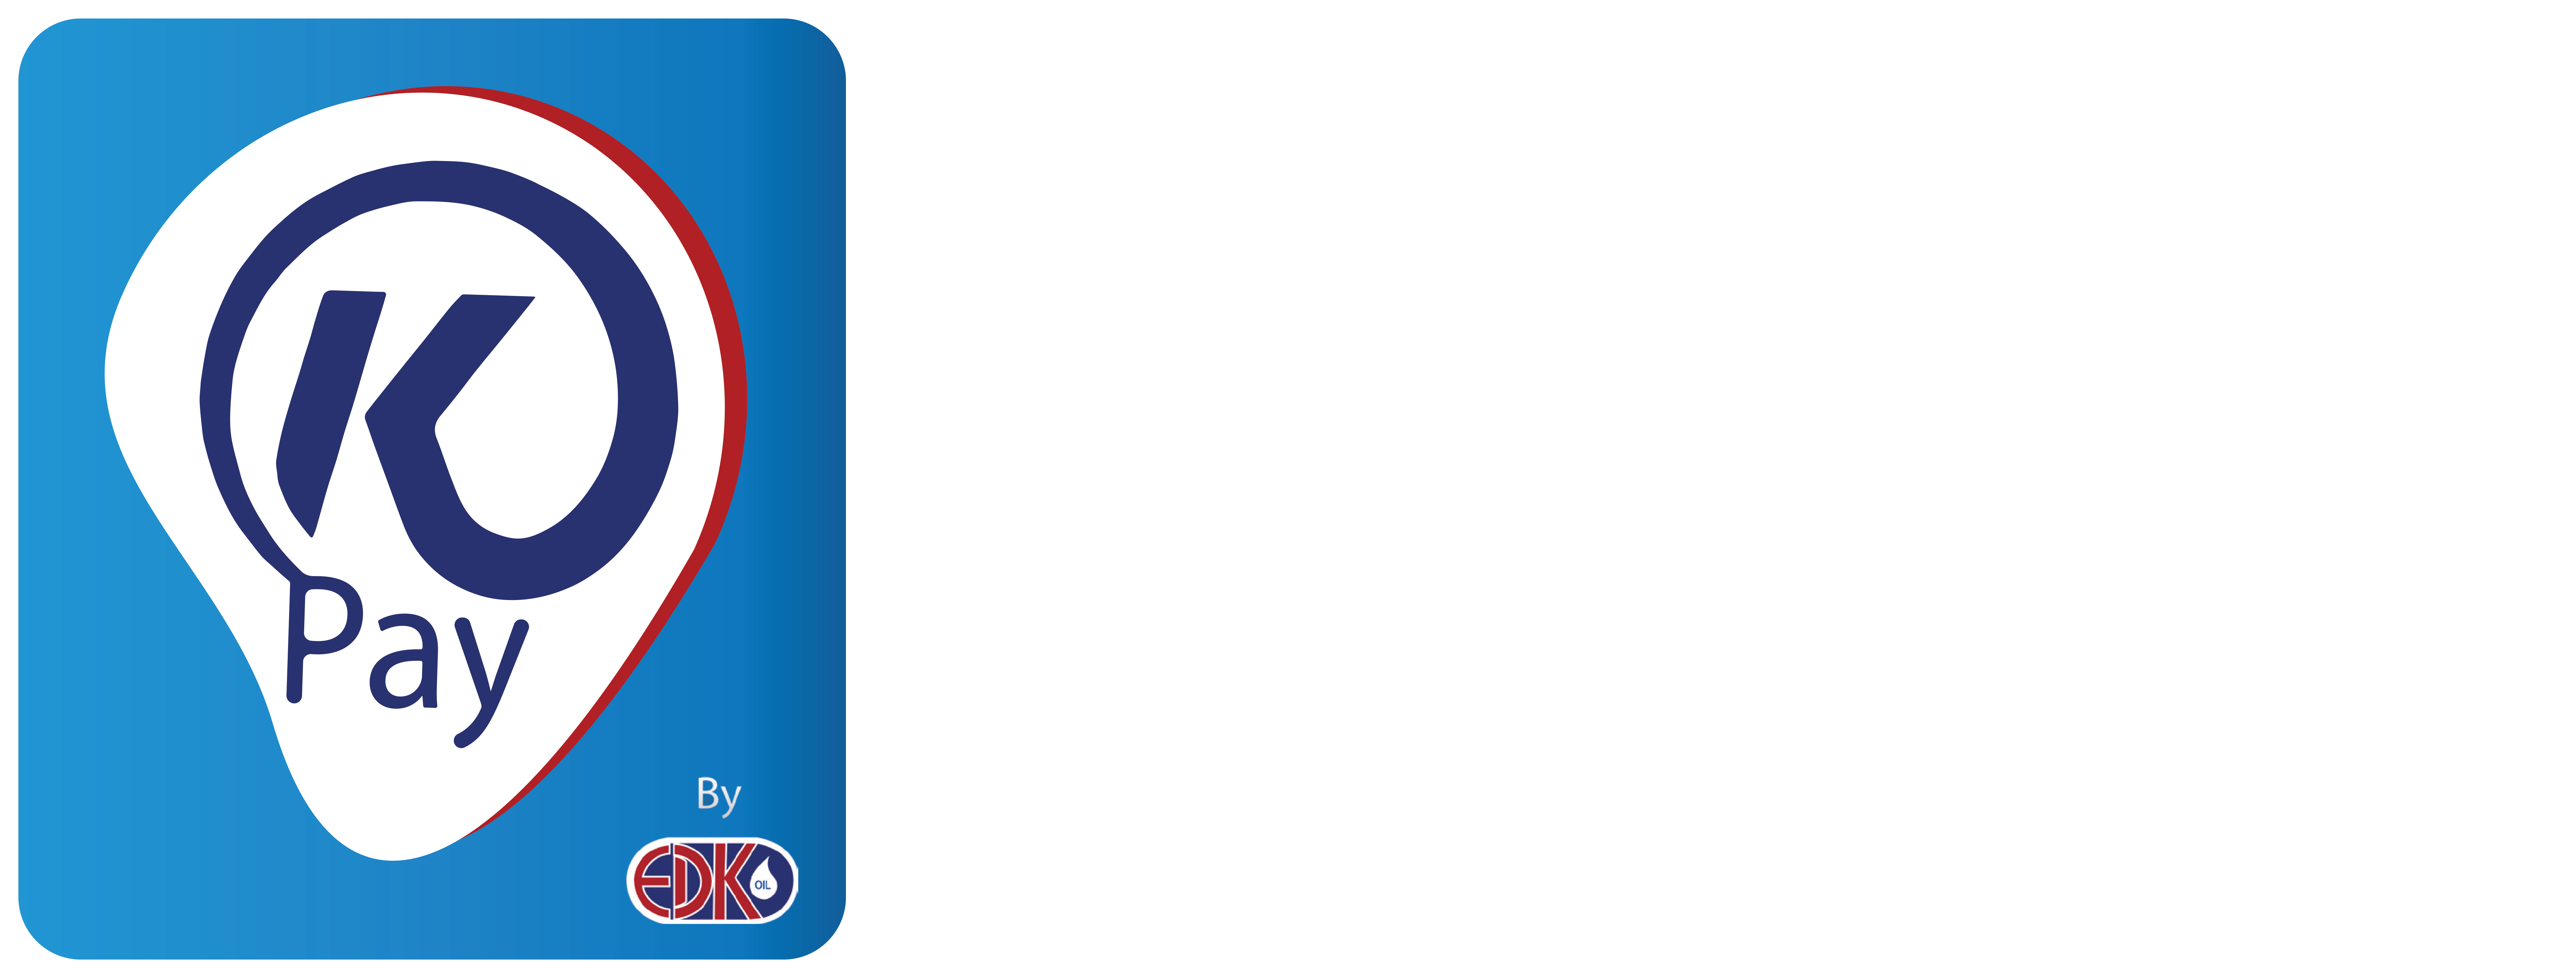 Logo-Kpay-Horizontal-ww